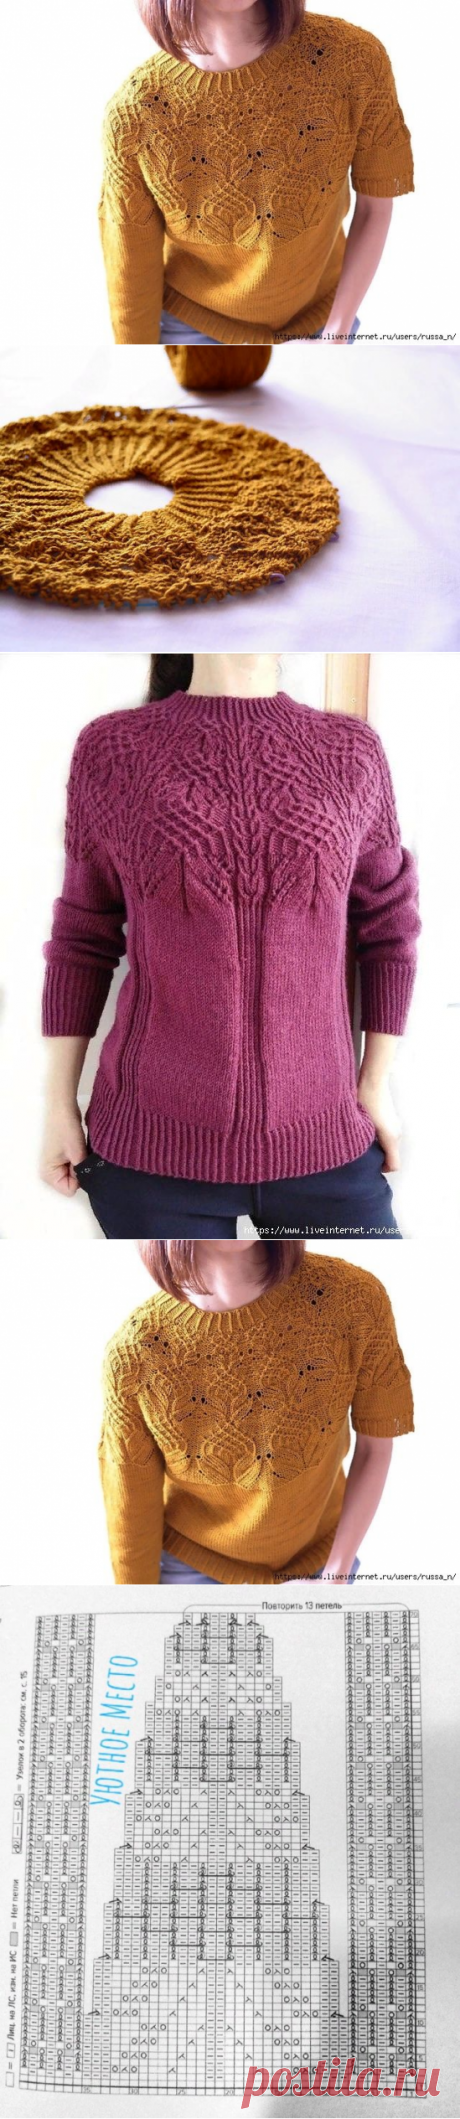 Схема кокетки оригинального пуловера Юриноки (Вязание спицами) – Журнал Вдохновение Рукодельницы